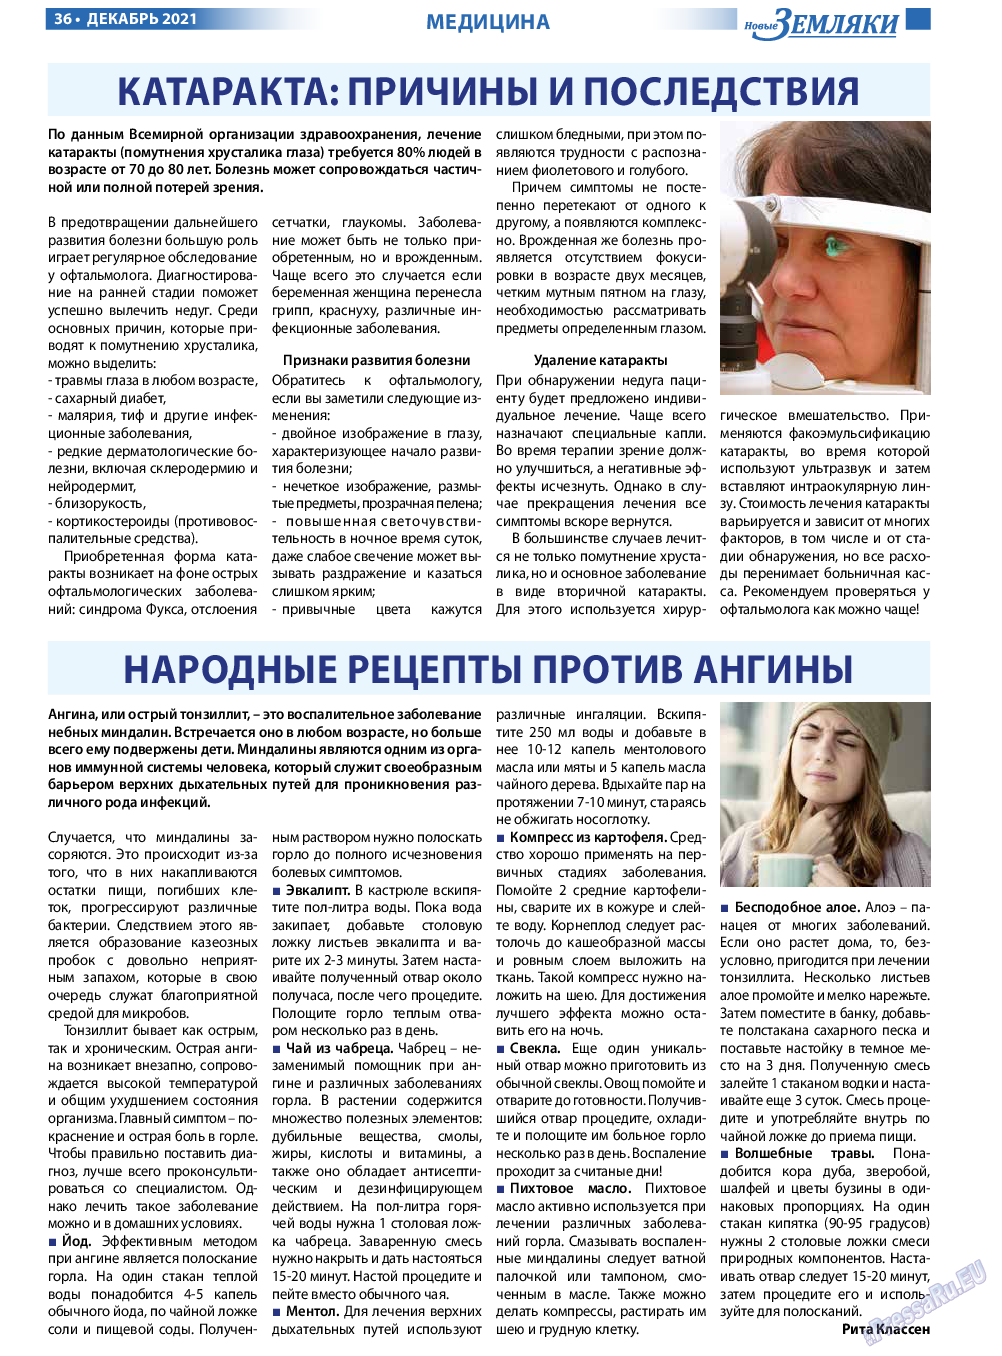 Новые Земляки, газета. 2021 №12 стр.36